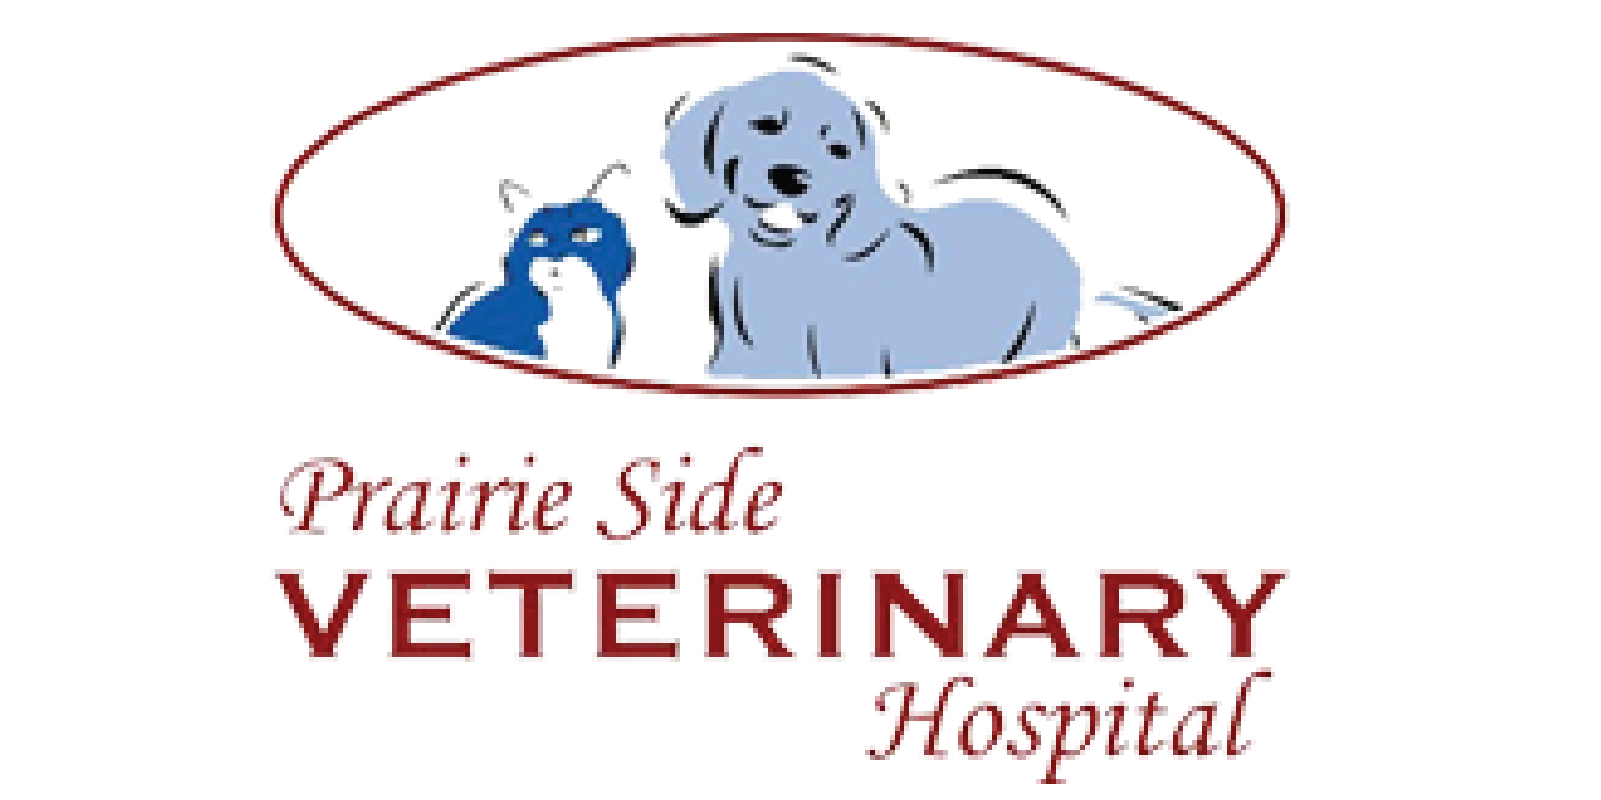 page 1 club, the gratzi, prairie side veterinary hospital